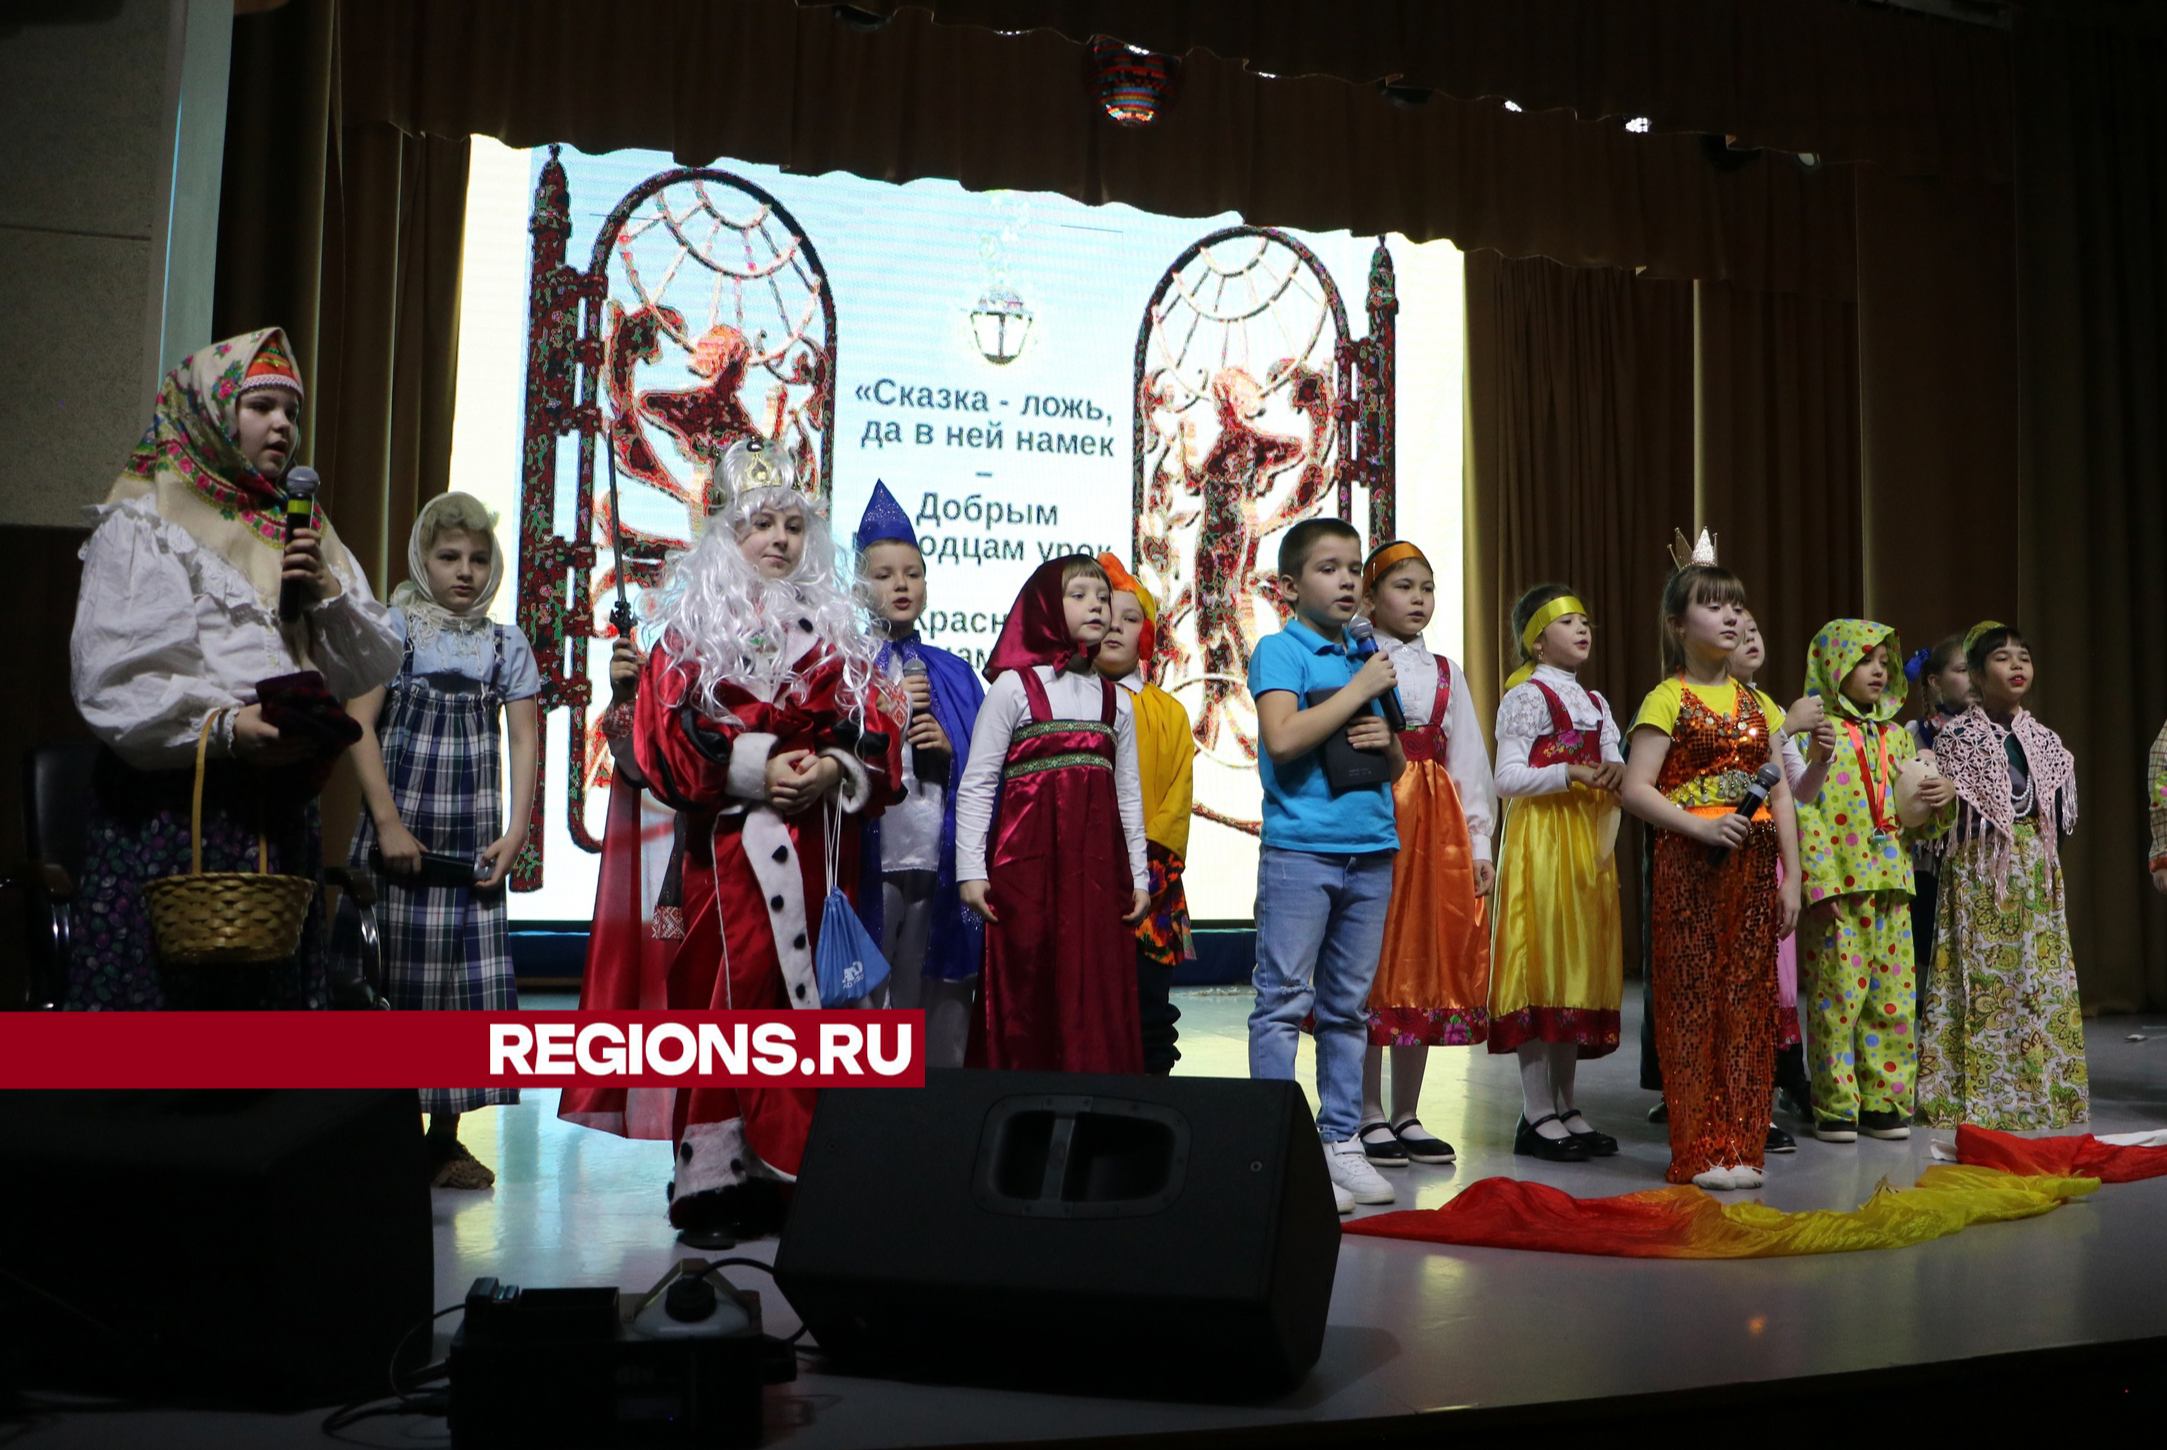 Детские театральные коллективы показали спектакли по мотивам русских сказок в Центральном доме культуры